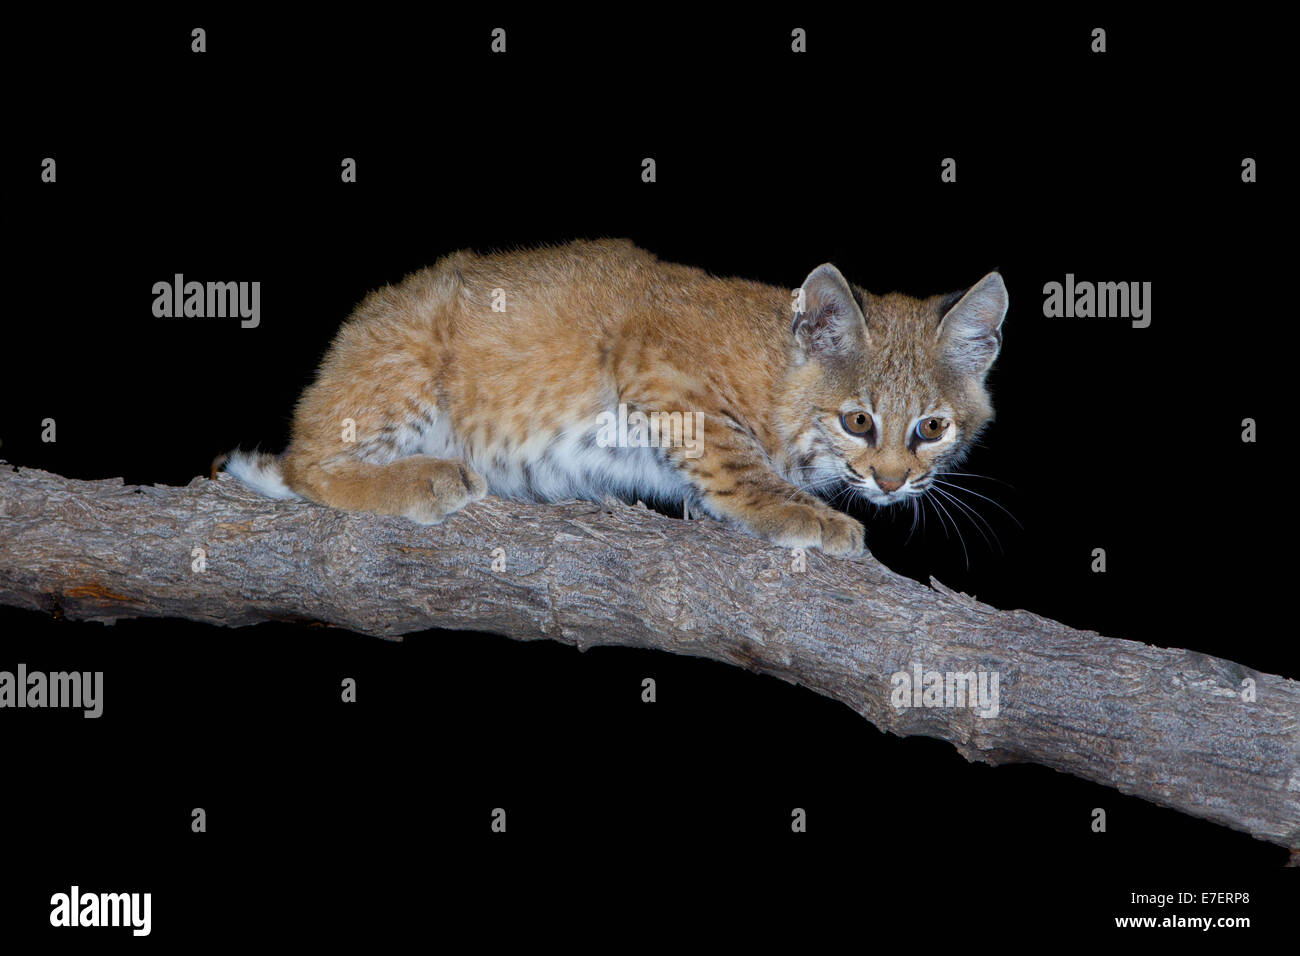 El gato montés Lynx rufus de Tucson, Arizona, Estados Unidos, 20 de agosto de jóvenes o gatito en Algarrobo. Felidae. Foto de stock